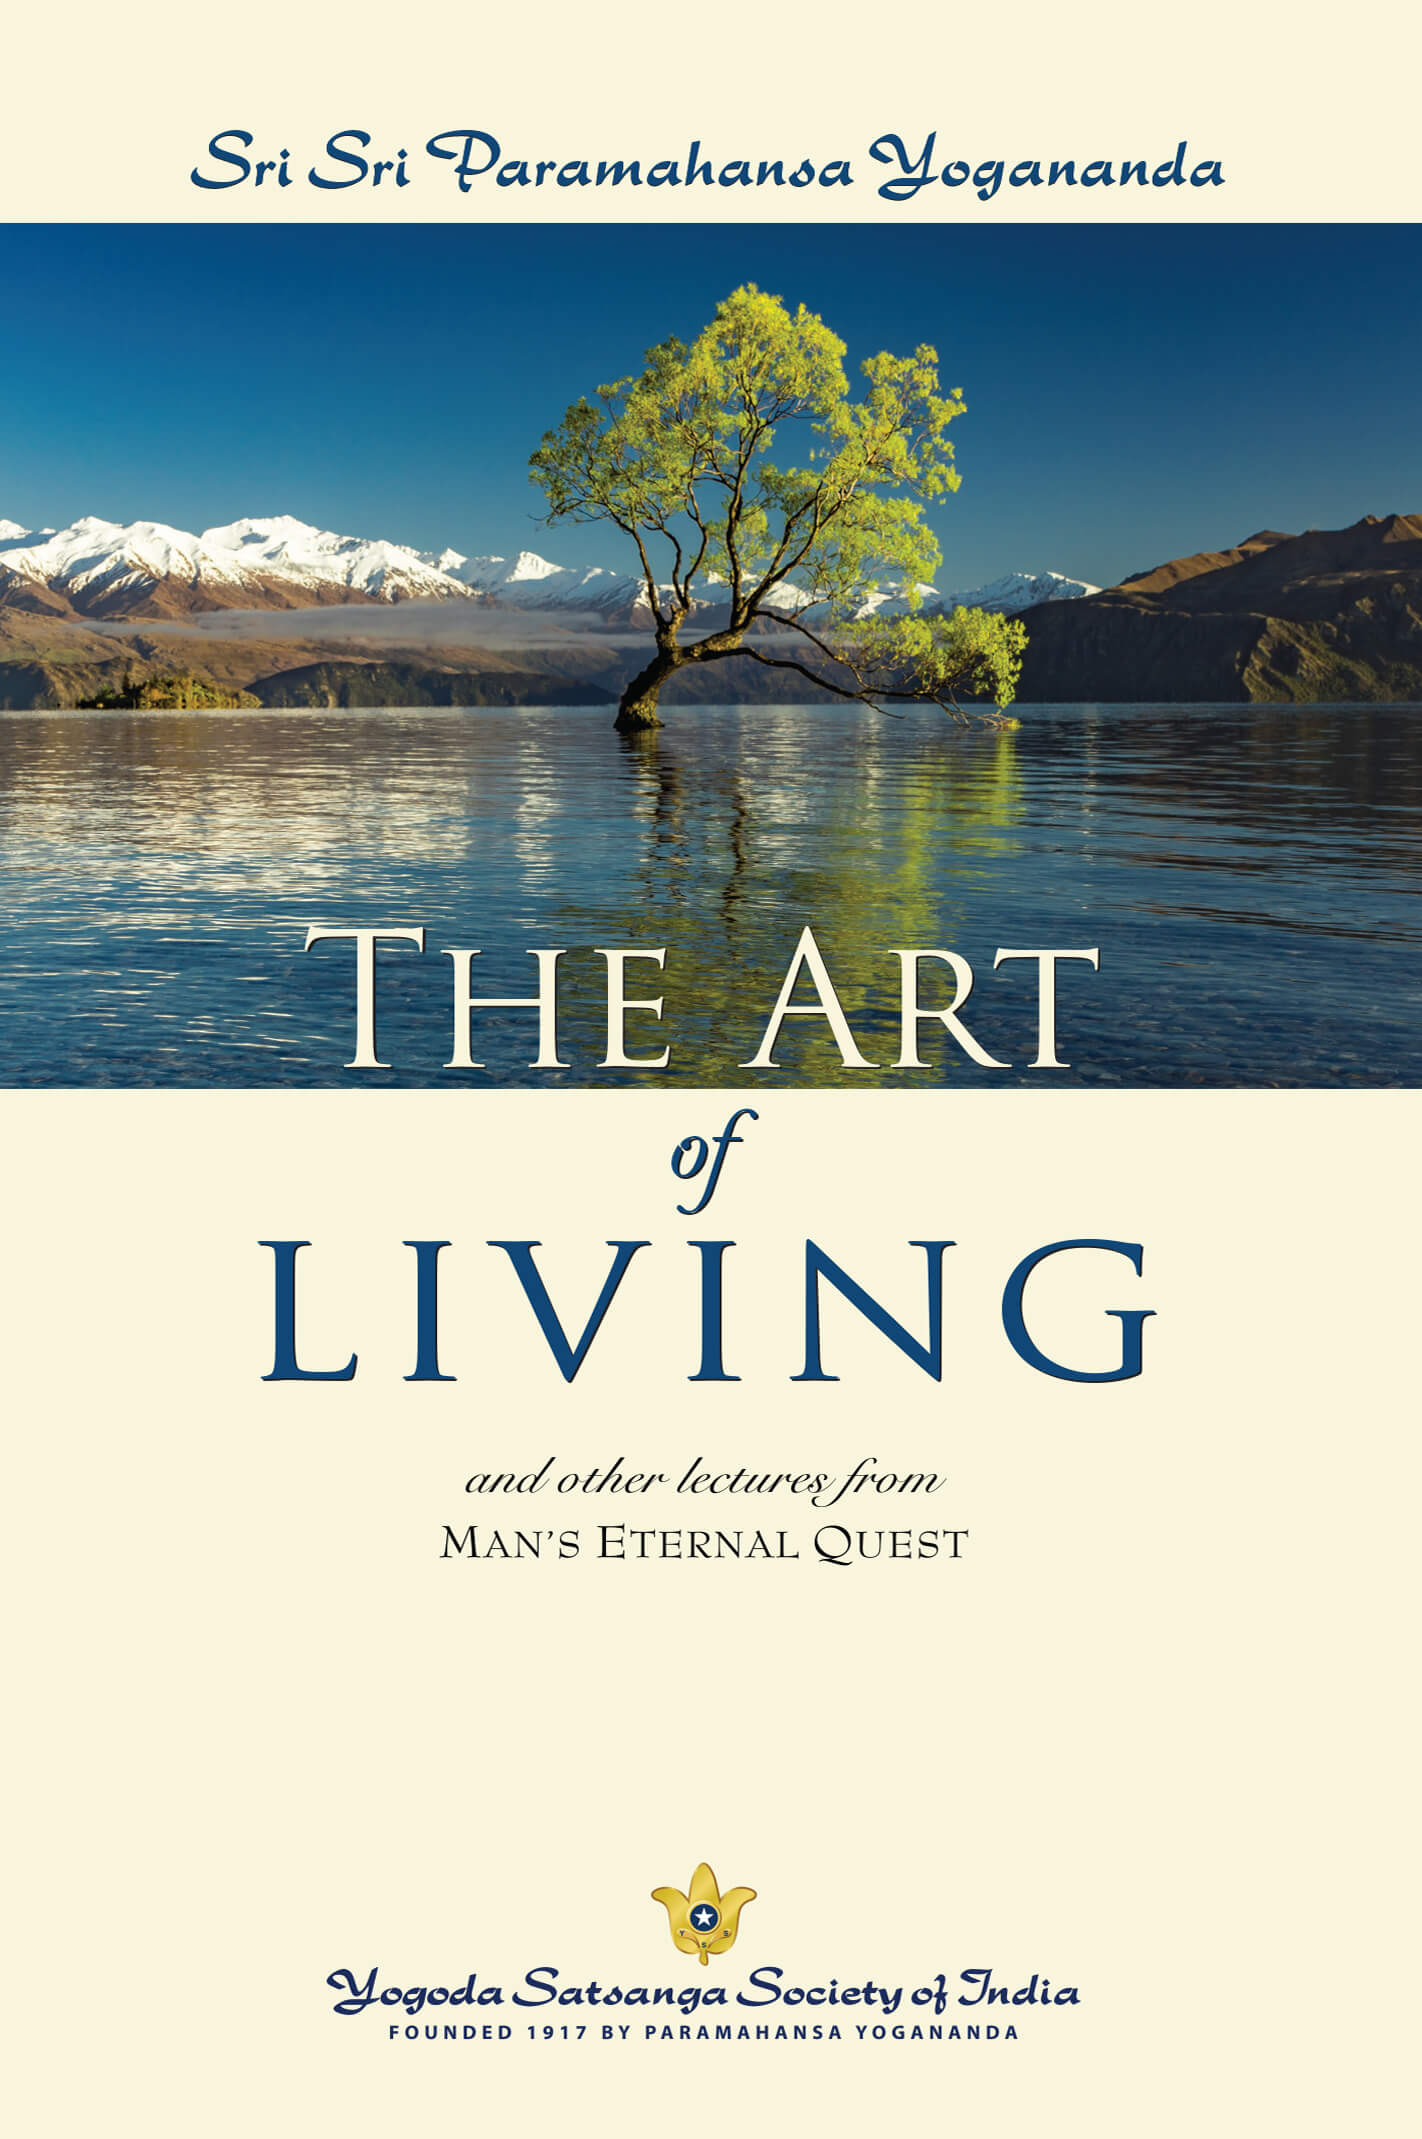 The Art of Living by Sri Sri Paramahansa Yogananda